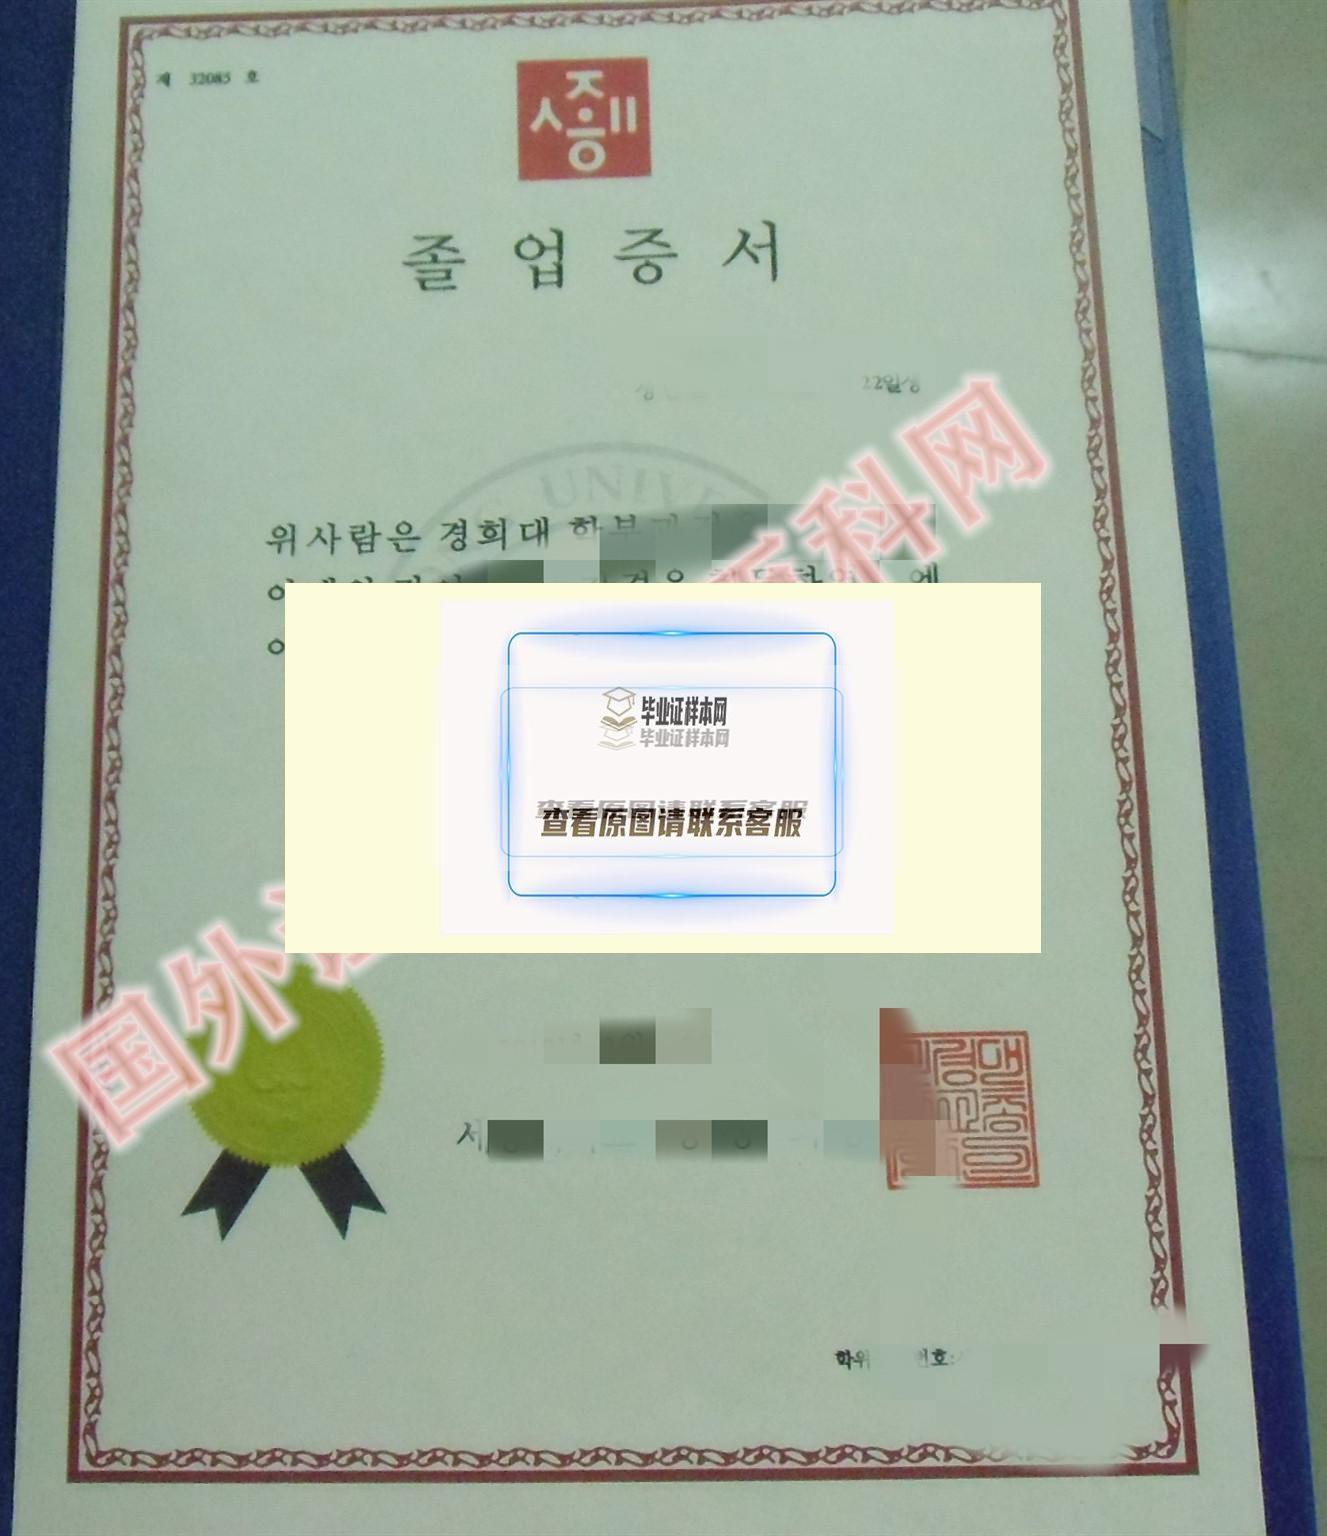 原版韩国世宗大学毕业证书样本